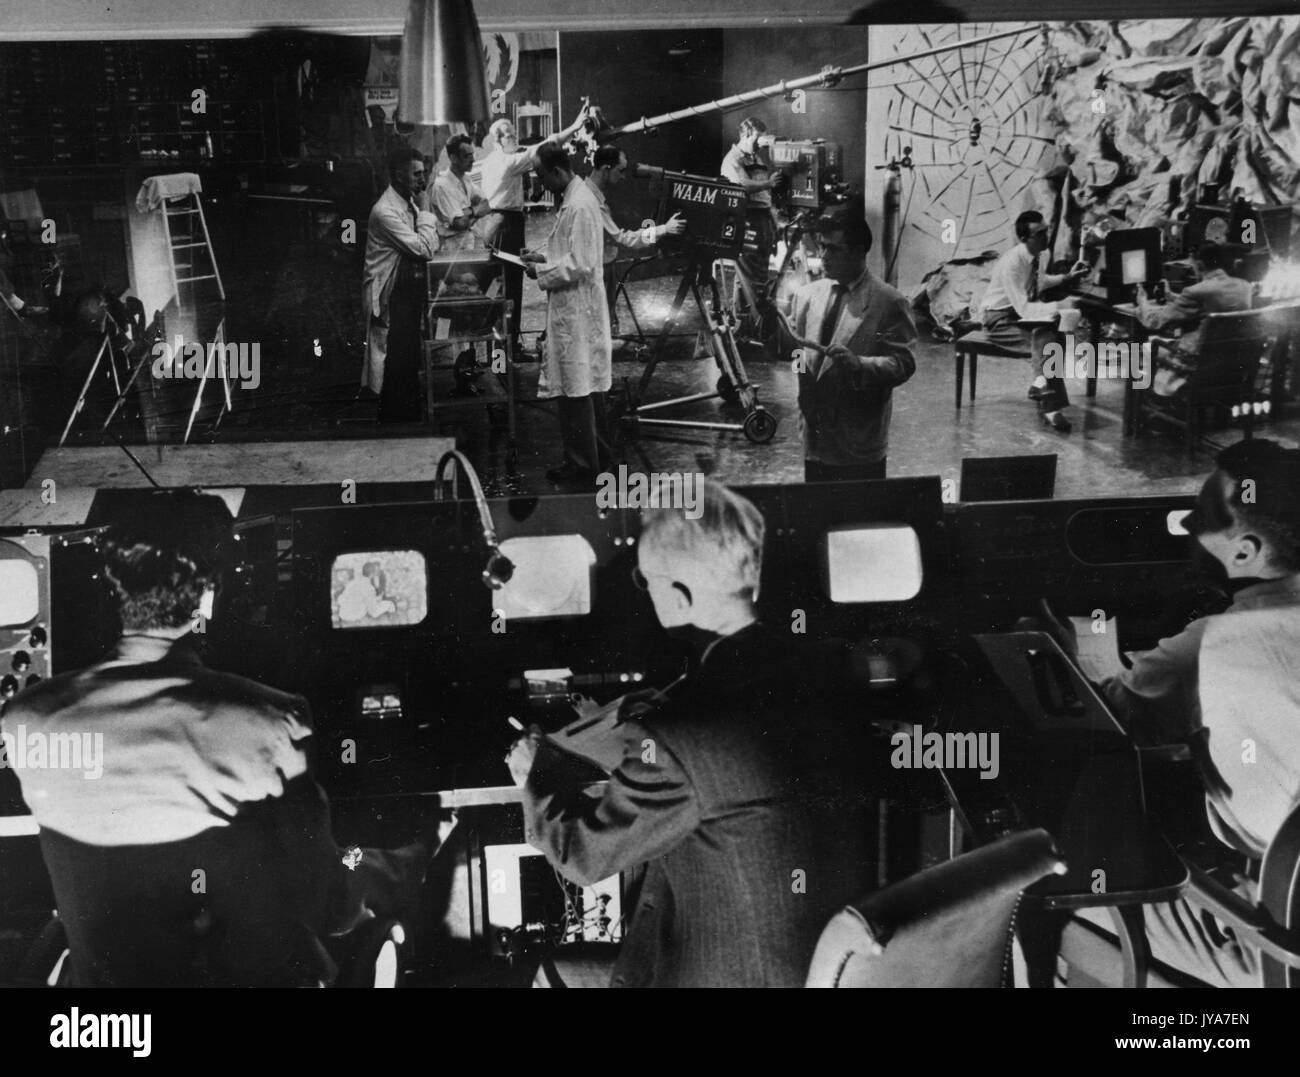 WAAM Studio Probe für 'Fear' Episode der Fernsehsendung The Johns Hopkins Science Review, 'Tony', amerikanische Fernsehmoderatorin Lynn Poole, Und 'Martin' sitzt hinter einem Kontrollpult, während WAAM Studio-Mitarbeiter mit Videogeräten an einem Shooting arbeiten, bei dem zwei Männer in Stühlen sitzen, die einander gegenüberstehen, WAAM Studio, Baltimore, Maryland, 3. Oktober 1957. Stockfoto